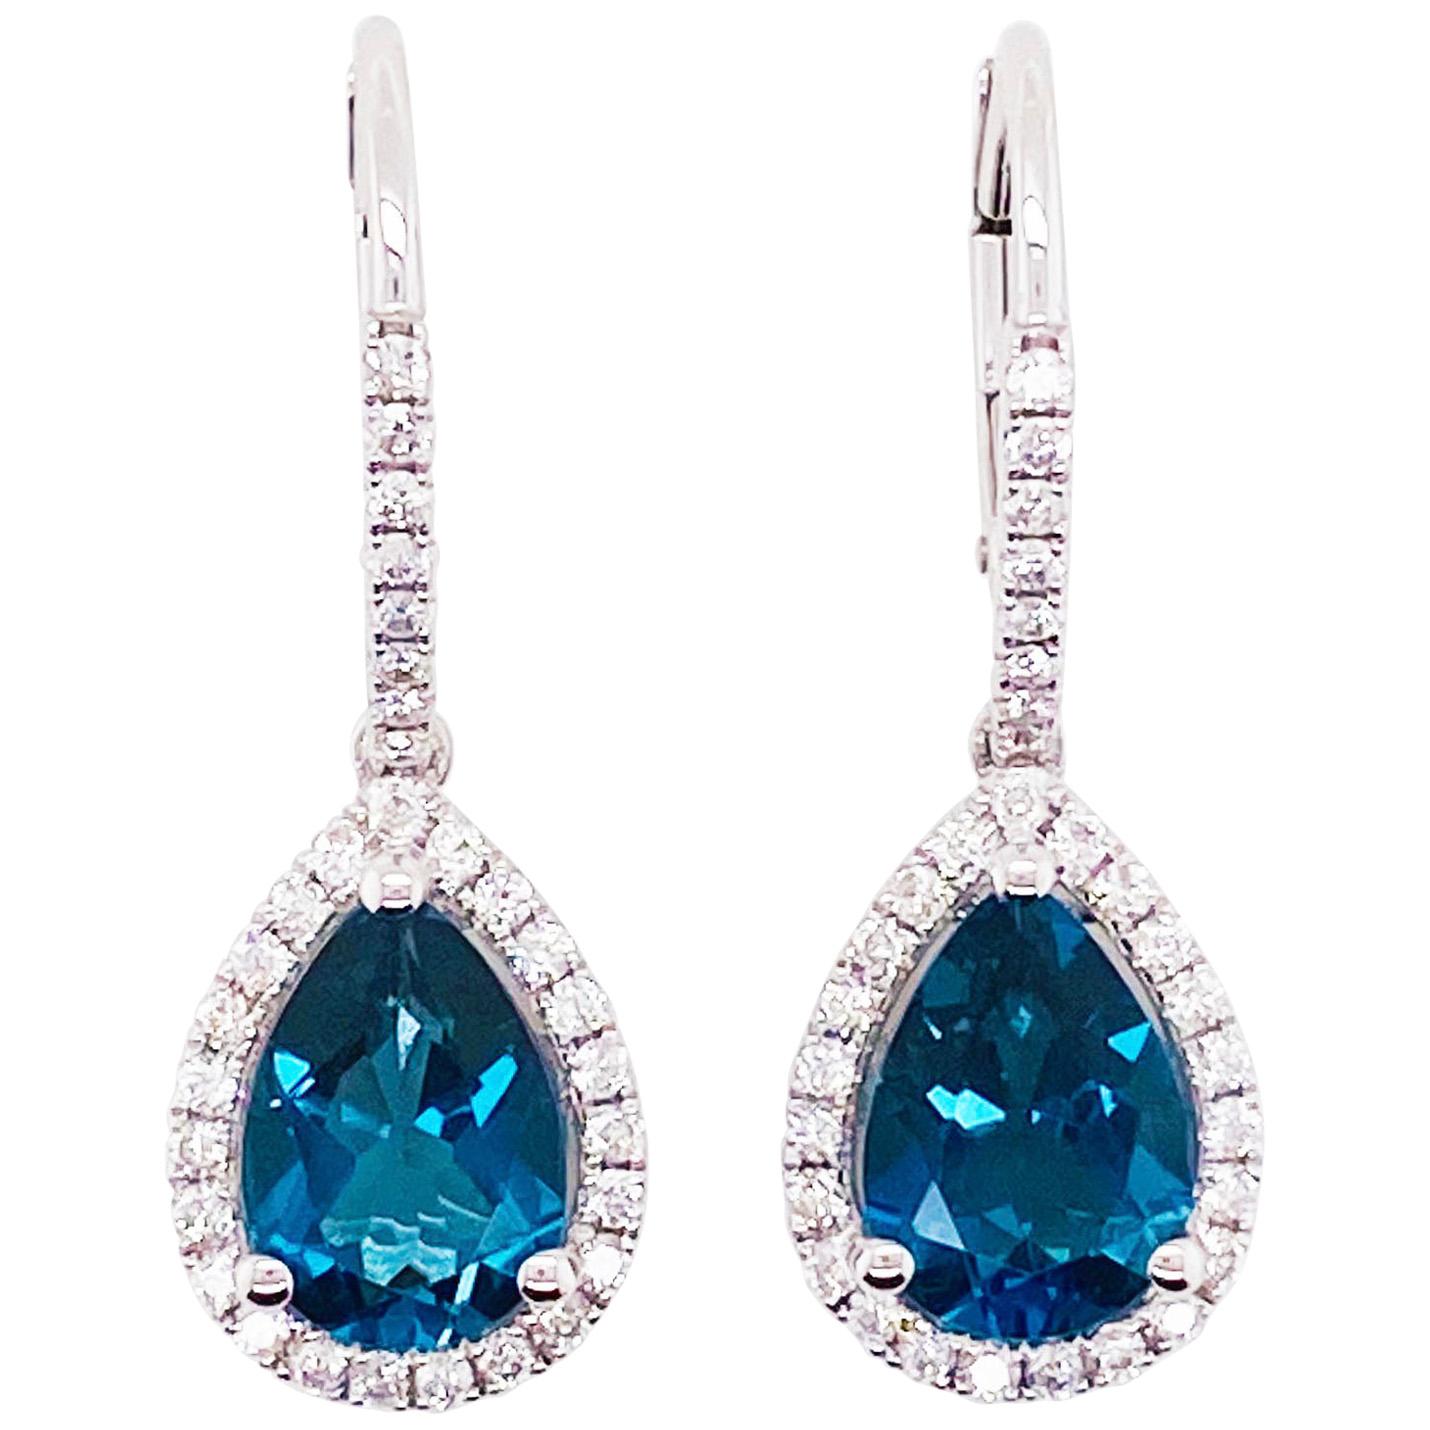 Royal Blue Topaz and Diamond Dangle Earrings in 14 Karat White Gold